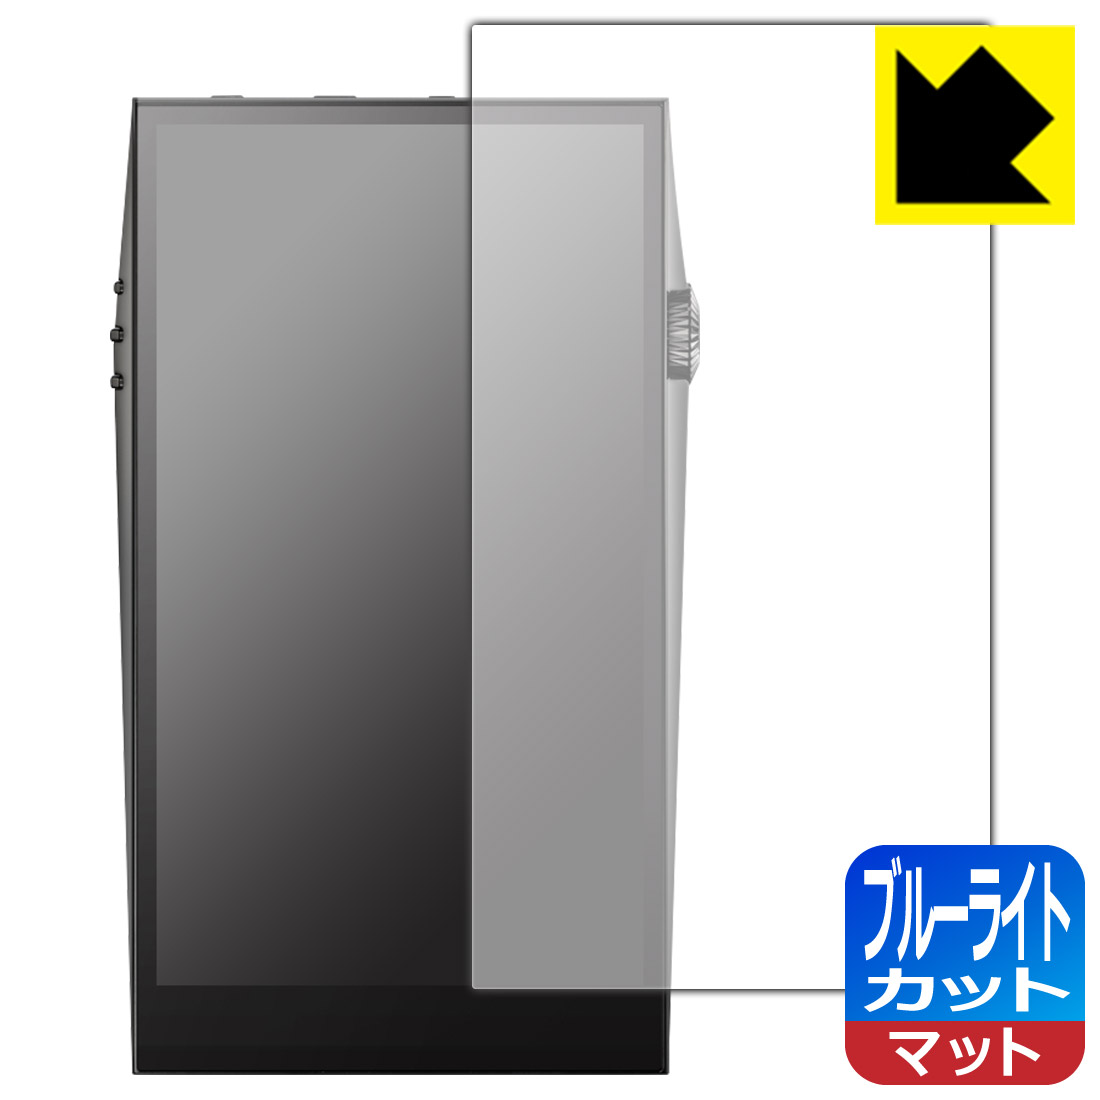 ブルーライトカット【反射低減】保護フィルム Astell&Kern A&ultima SP3000 日本製 自社製造直販